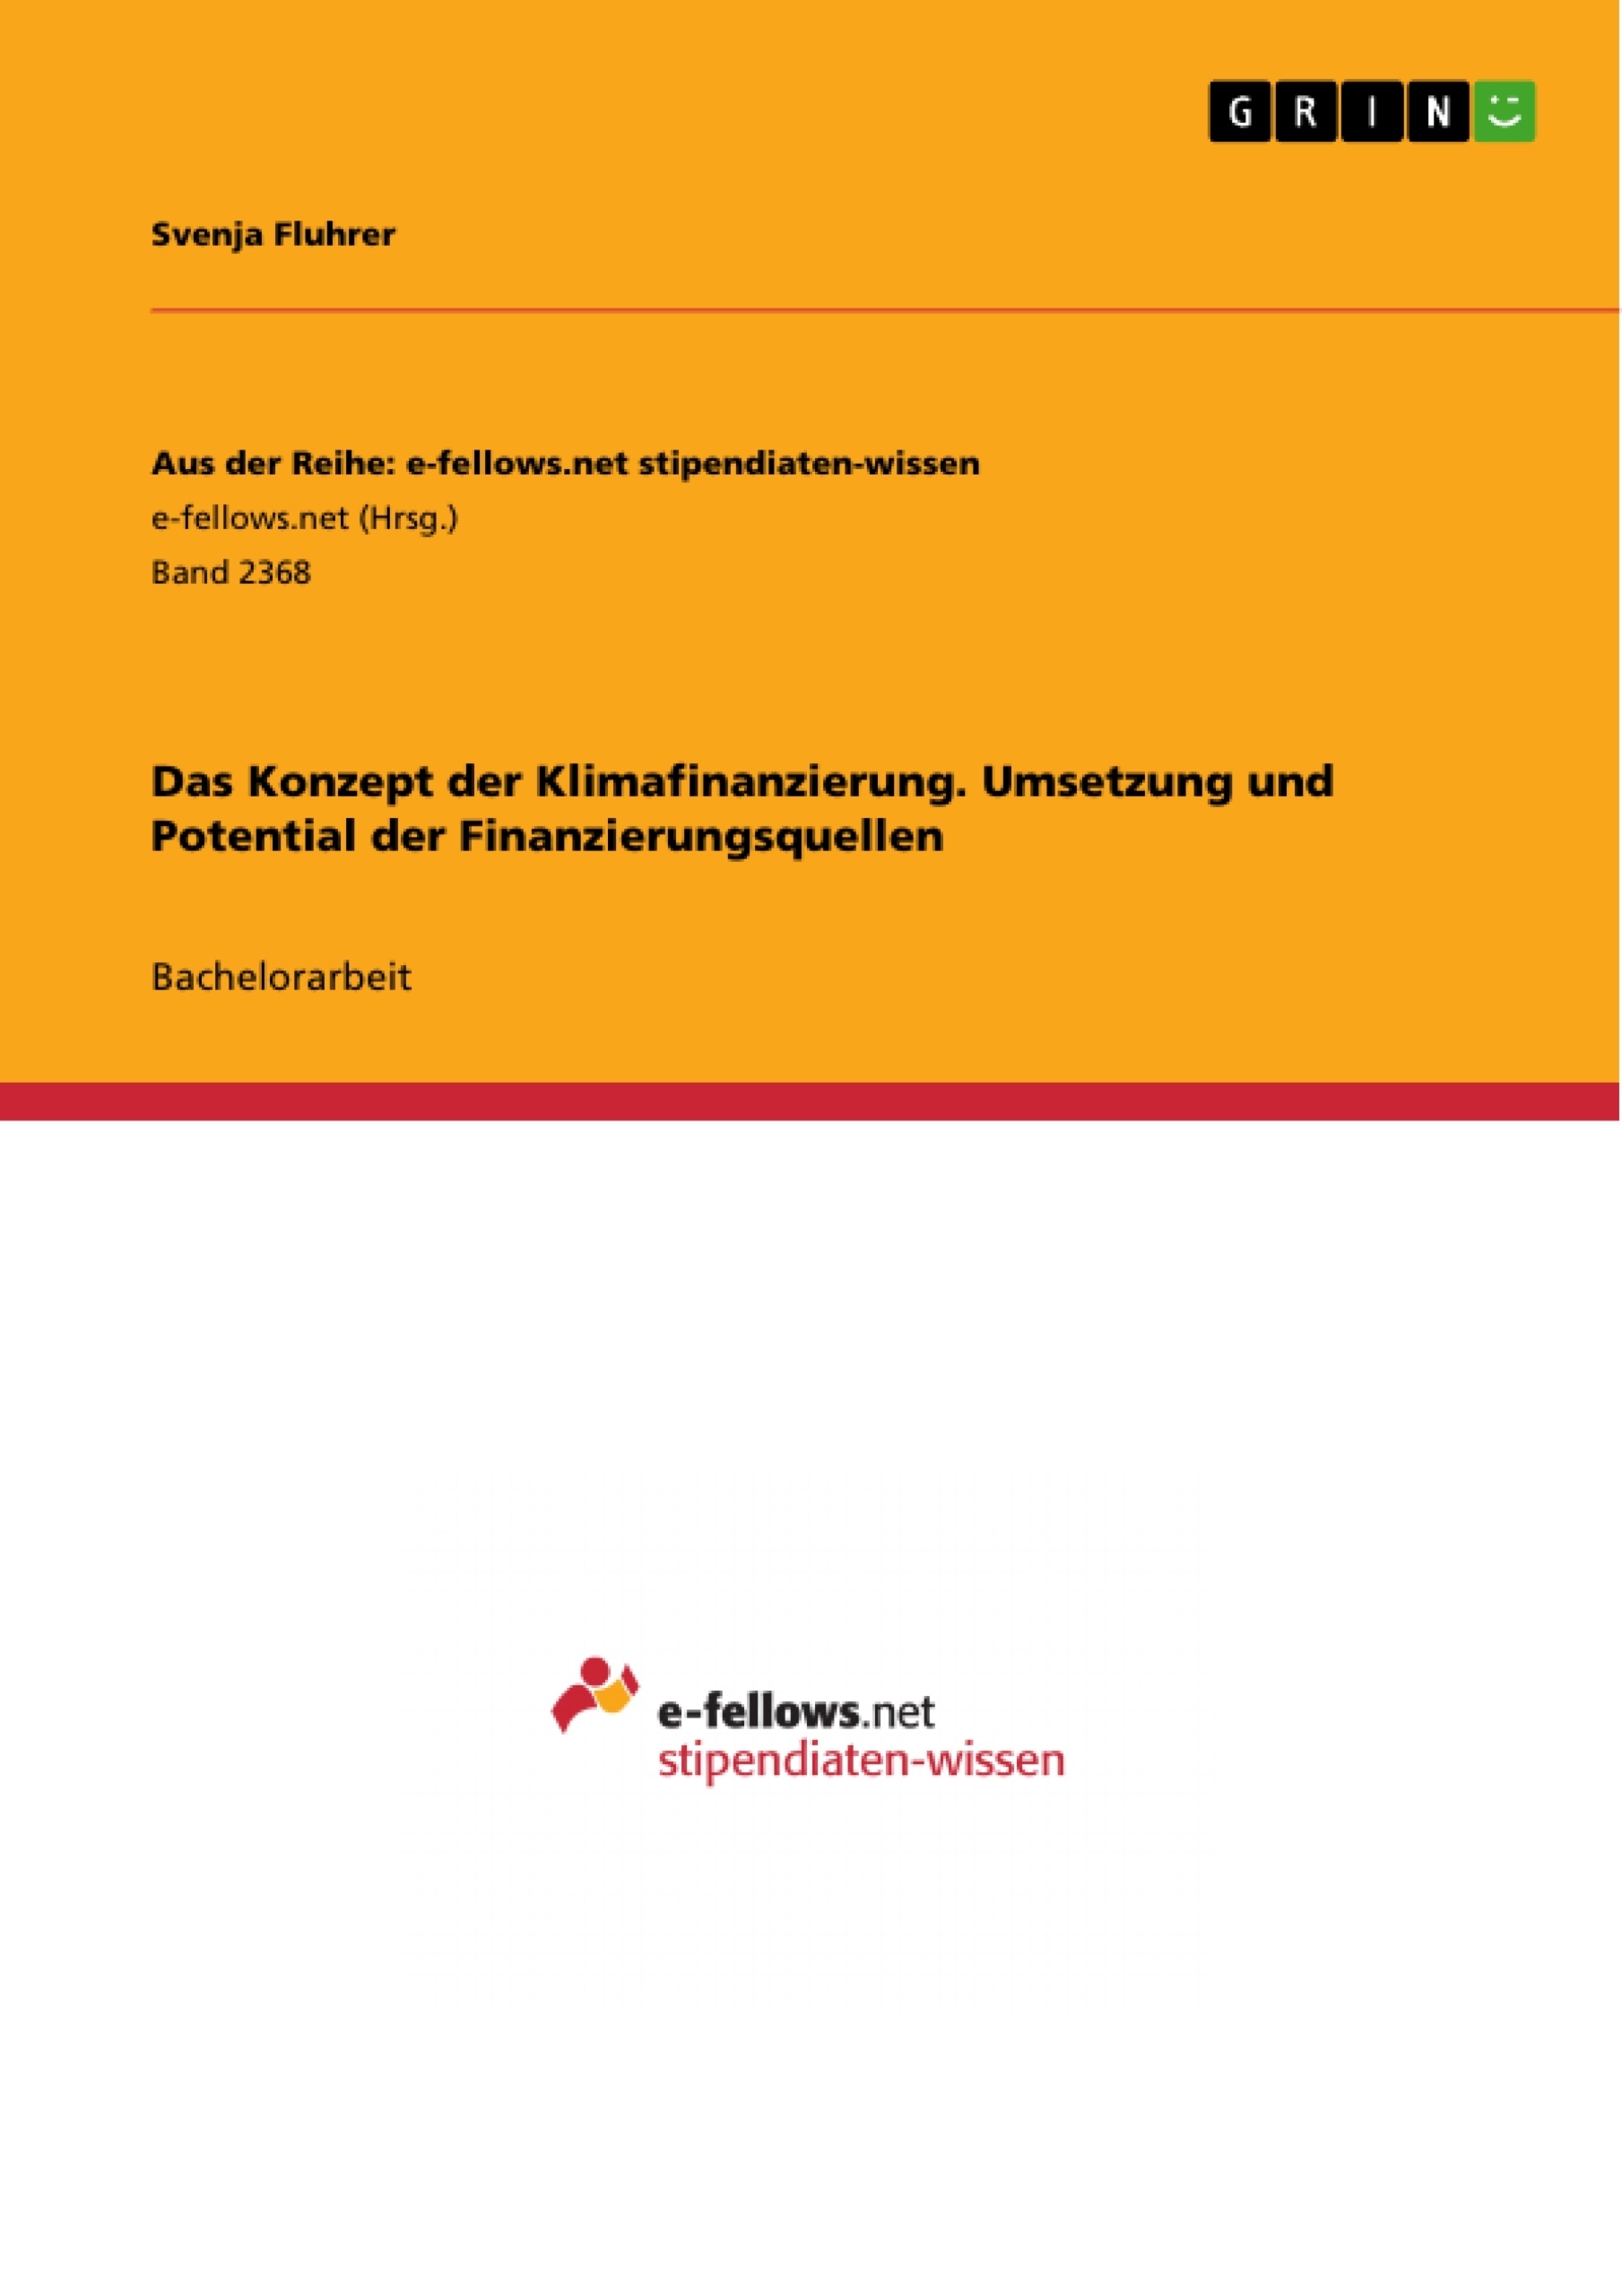 Title: Das Konzept der Klimafinanzierung. Umsetzung und Potential der Finanzierungsquellen